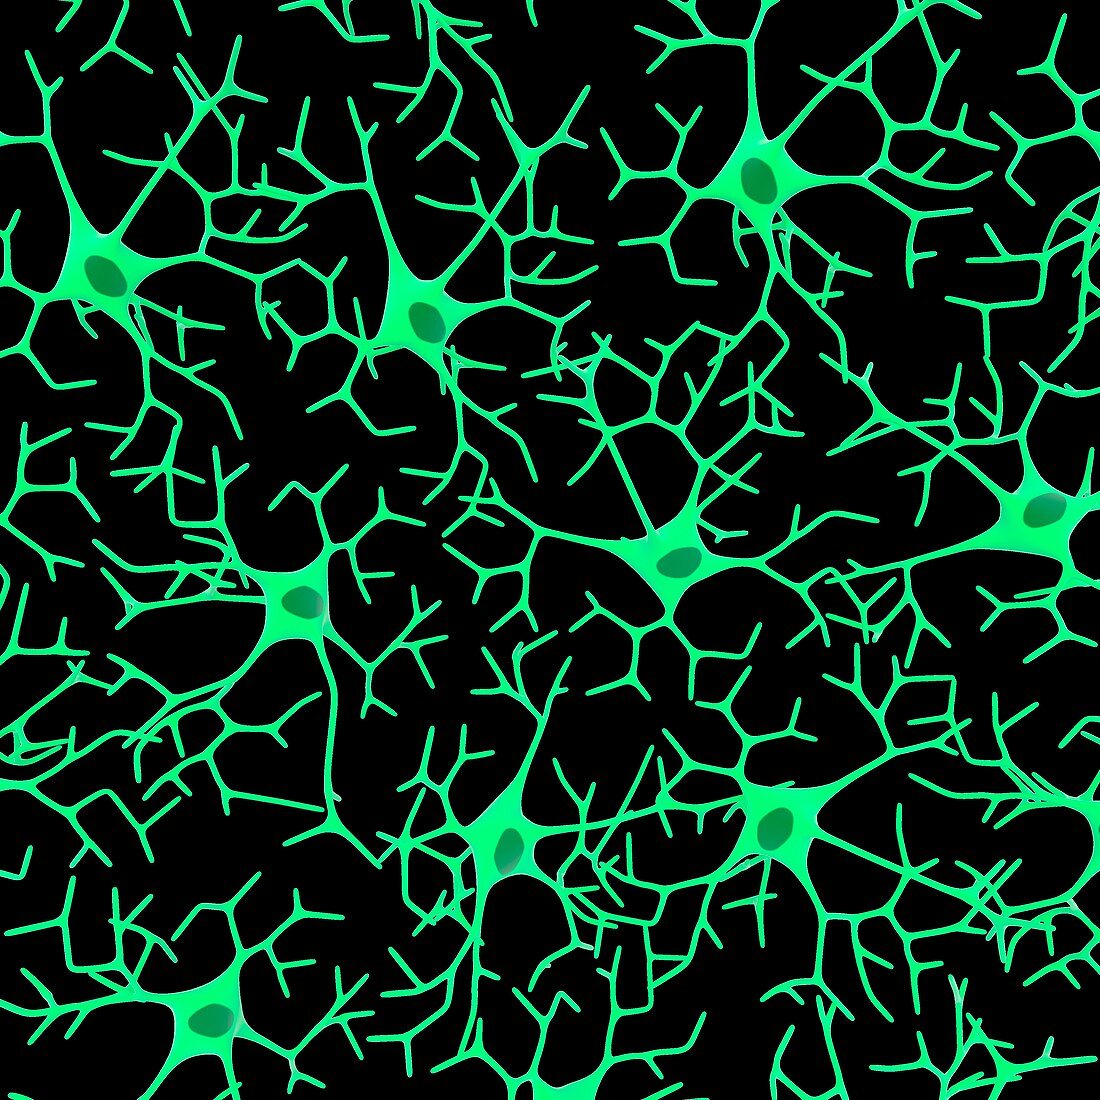 Nerve cells,illustration